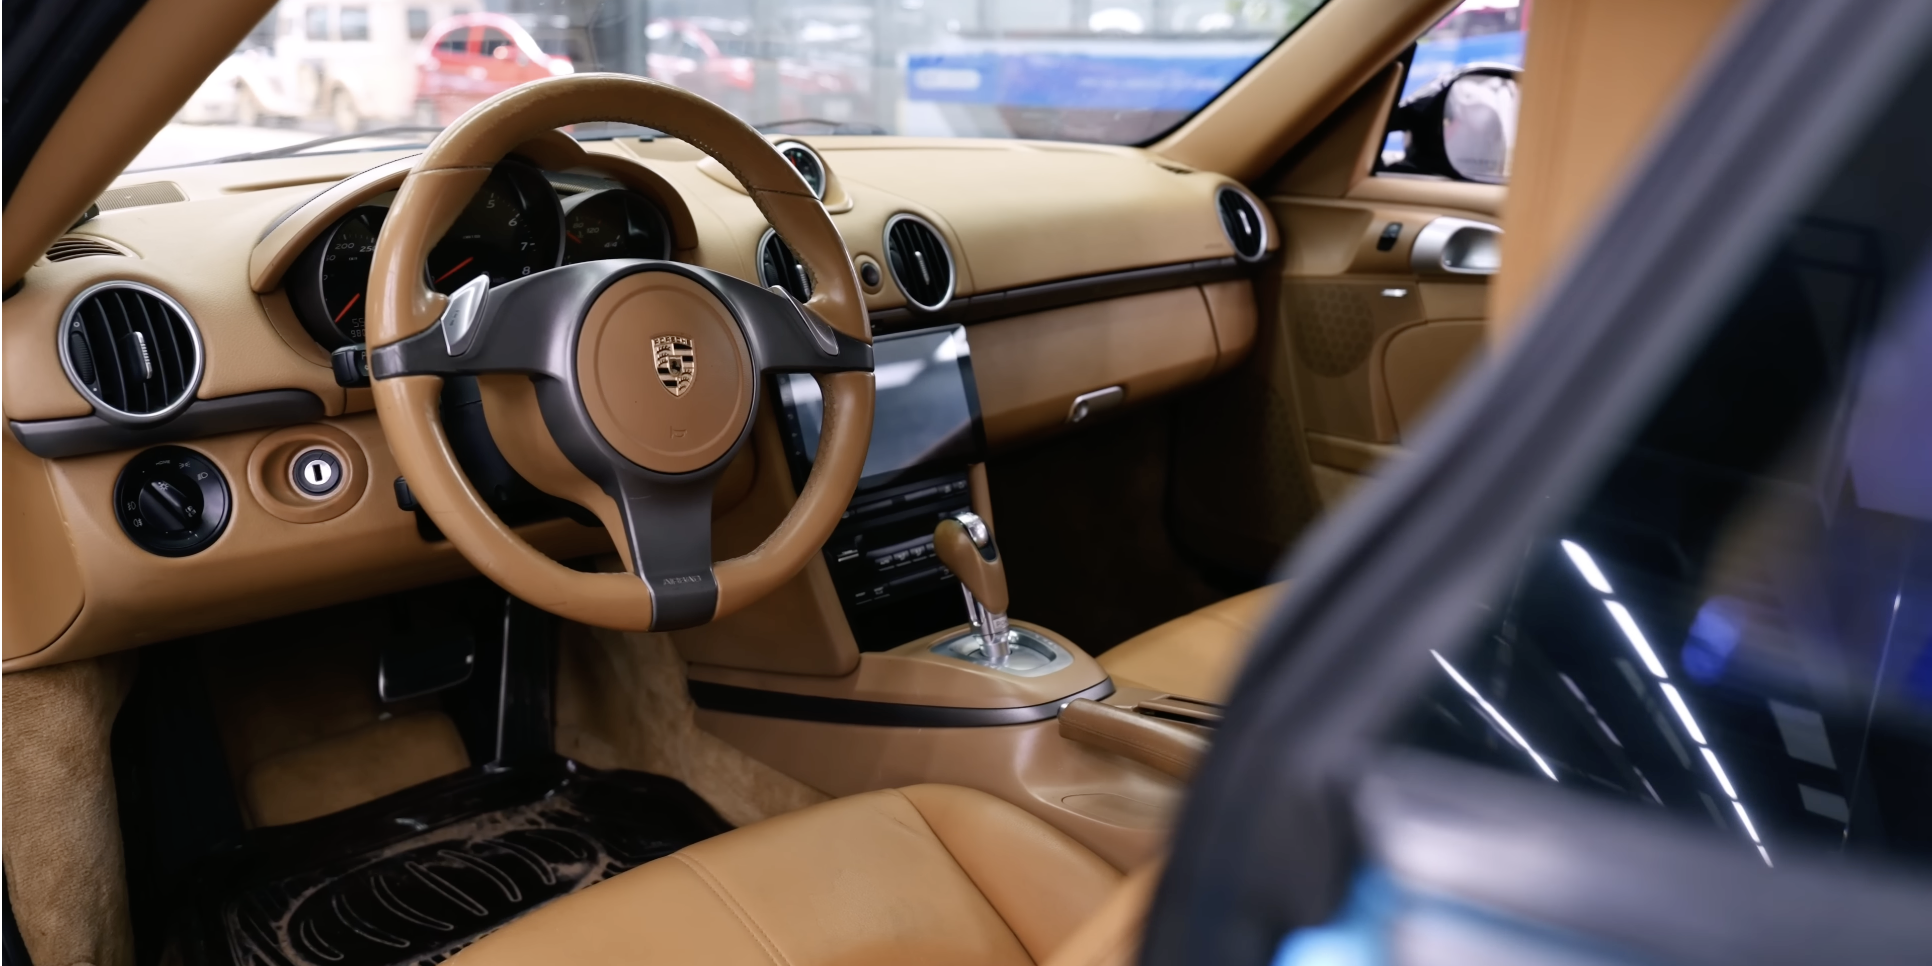 Thợ Việt ‘lột xác’ Porsche Cayman 15 tuổi theo phong cách xe đời mới, thêm màn hình Android và trần sao kiểu Rolls-Royce - Ảnh 6.